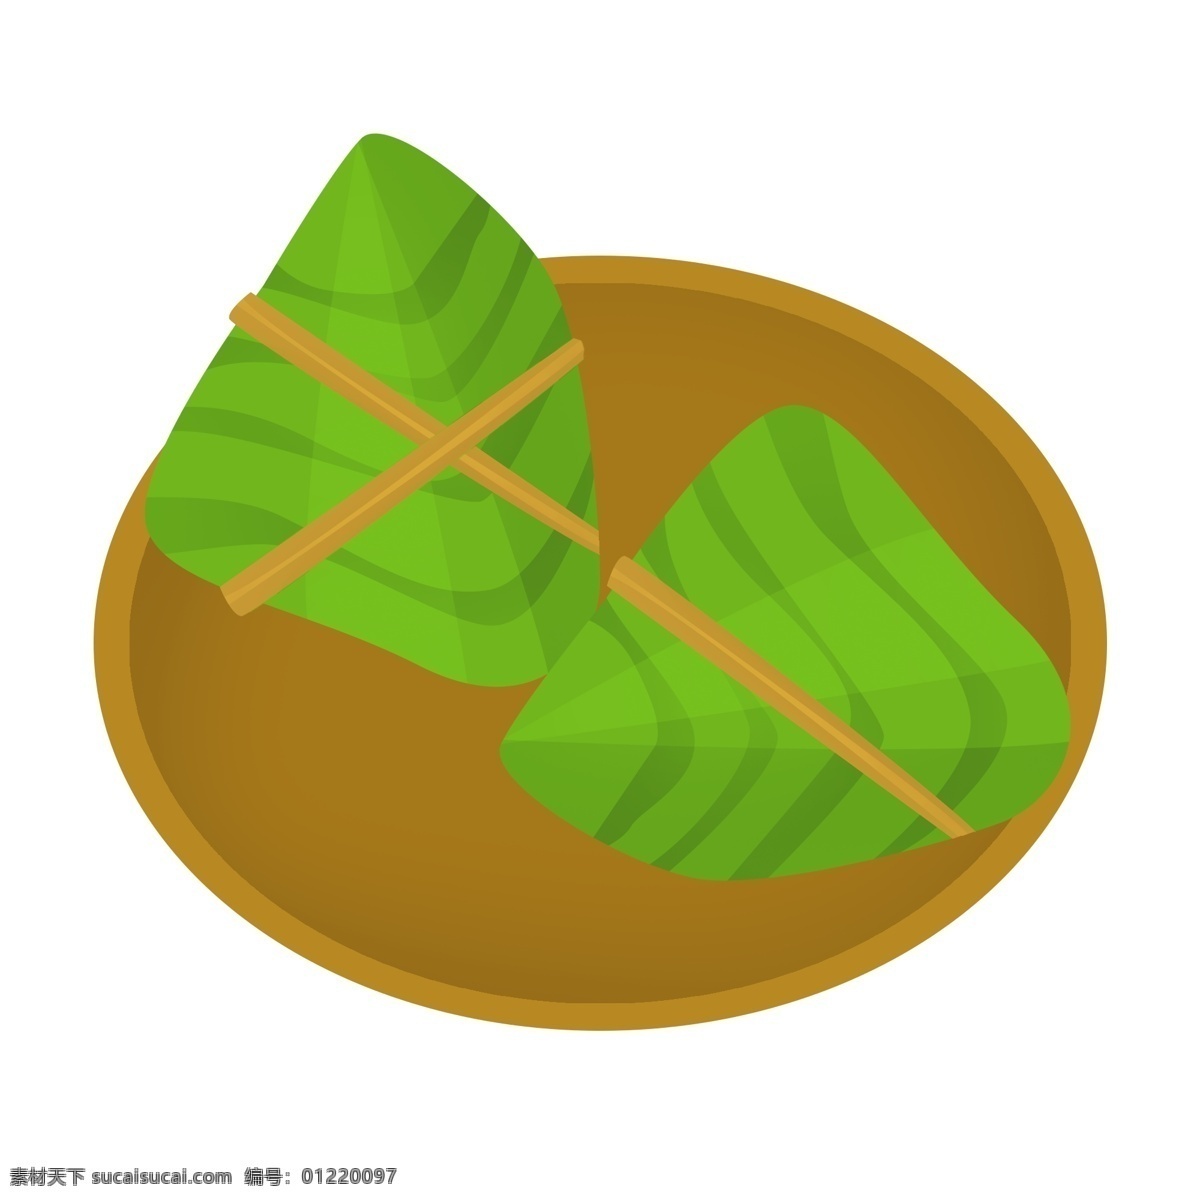 端午节 大米 粽子 绿色的粽子 小吃插画 卡通插画 端午节粽子 食物插画 粽子插画 大米的粽子